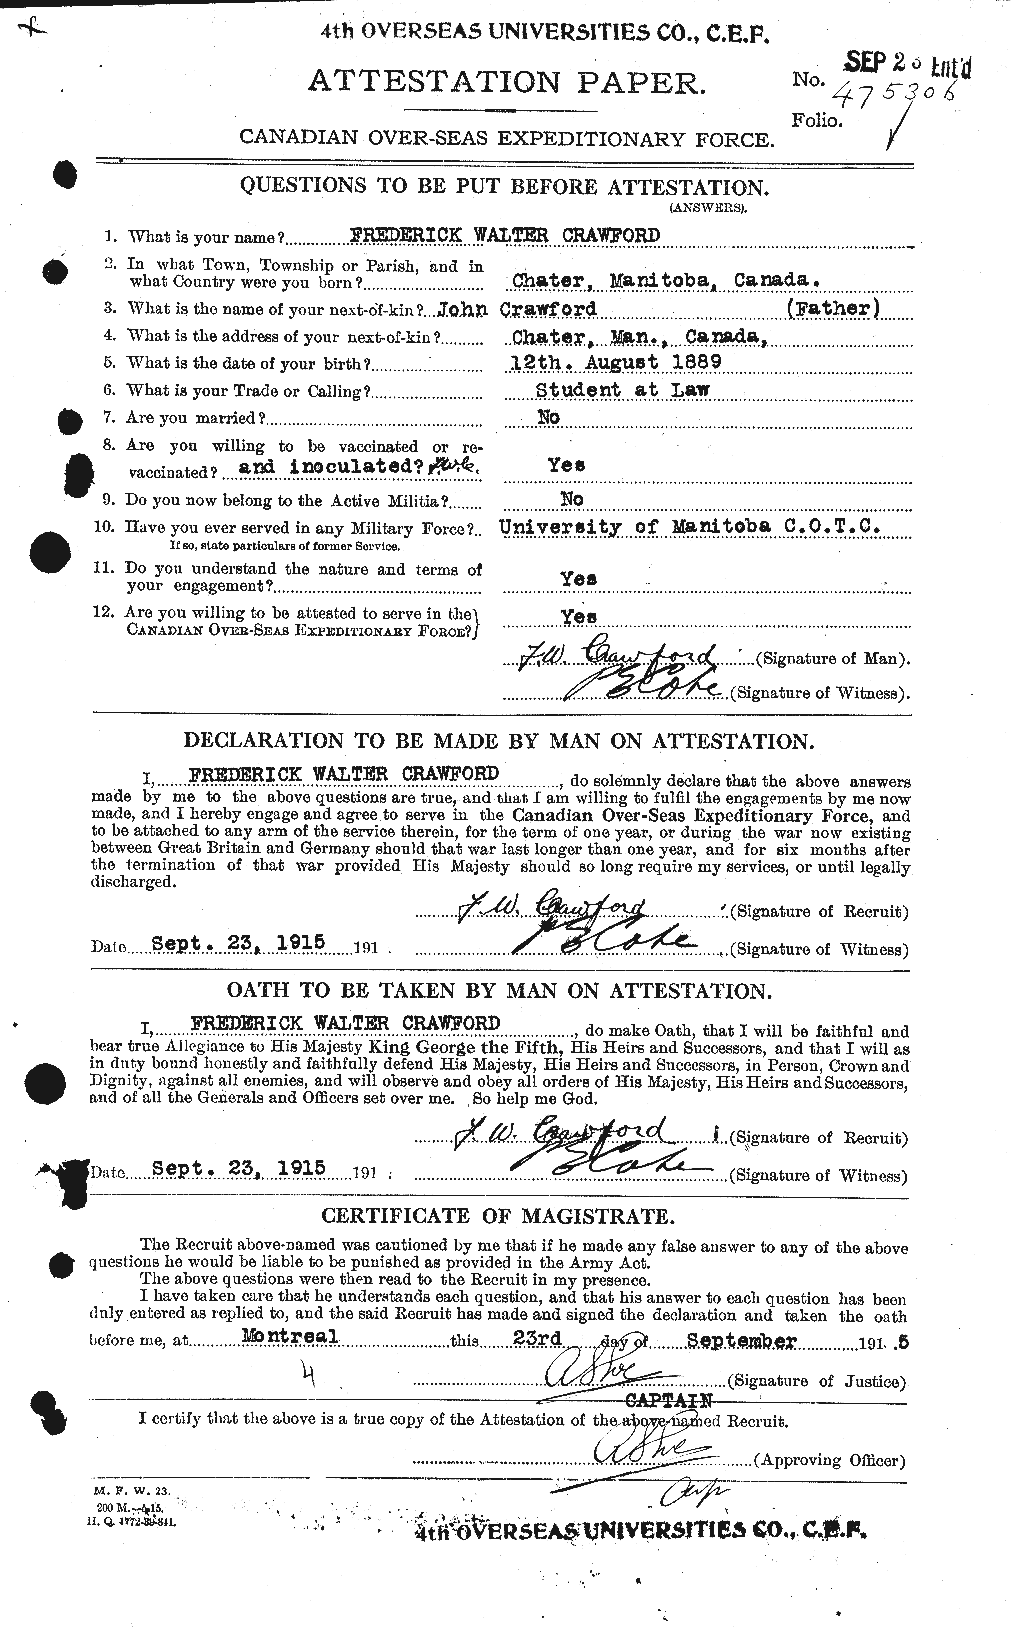 Dossiers du Personnel de la Première Guerre mondiale - CEC 060722a